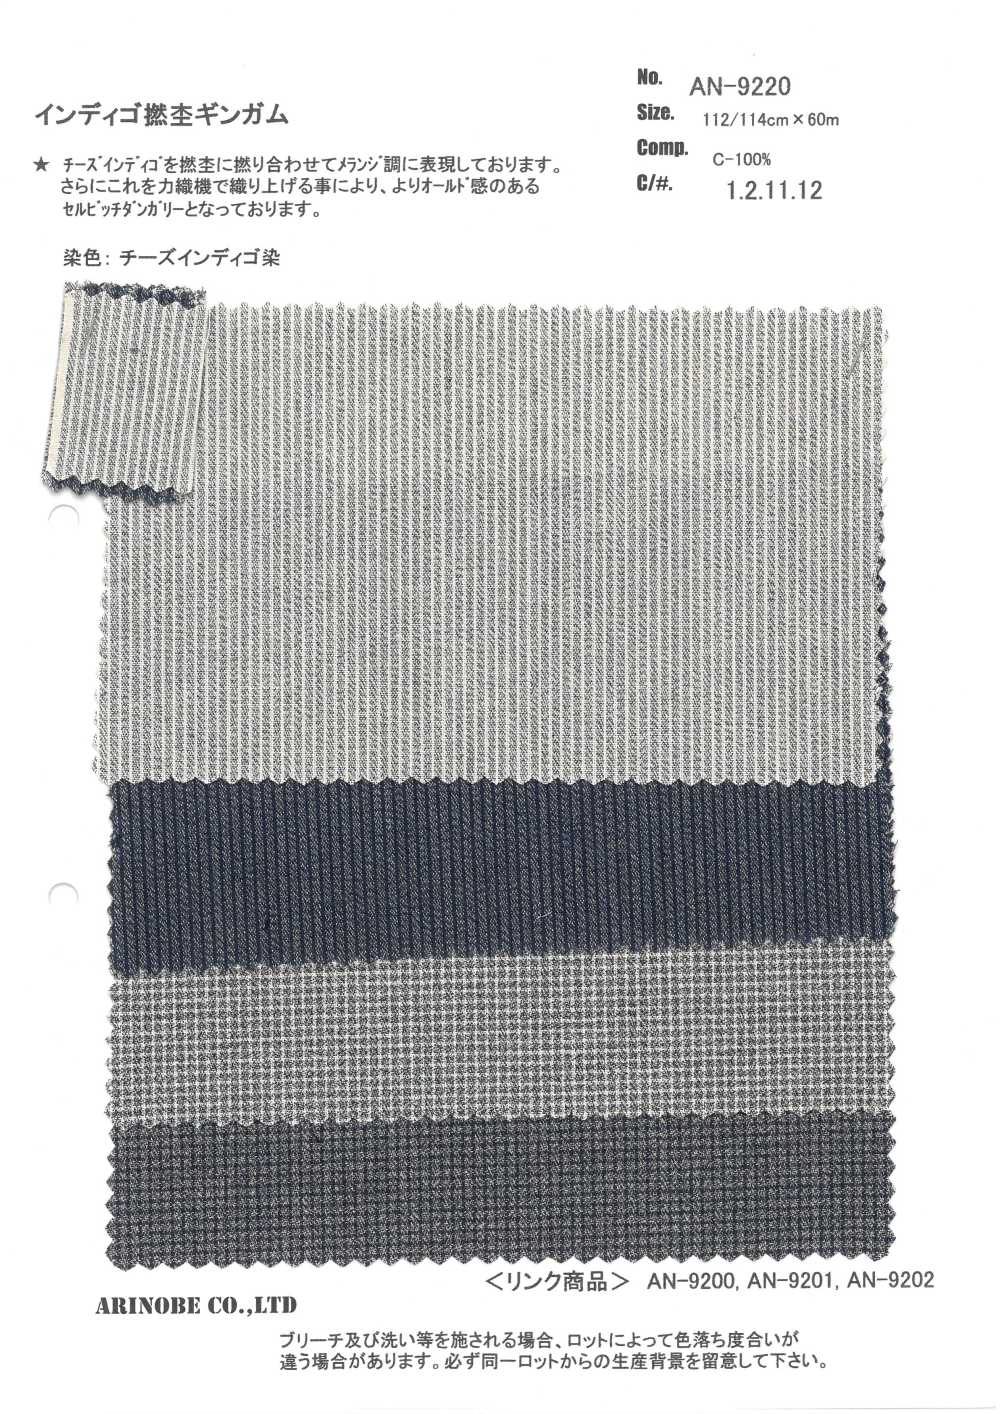 AN-9220 Cheque De Guingán Jaspeado Retorcido índigo[Fabrica Textil] ARINOBE CO., LTD.